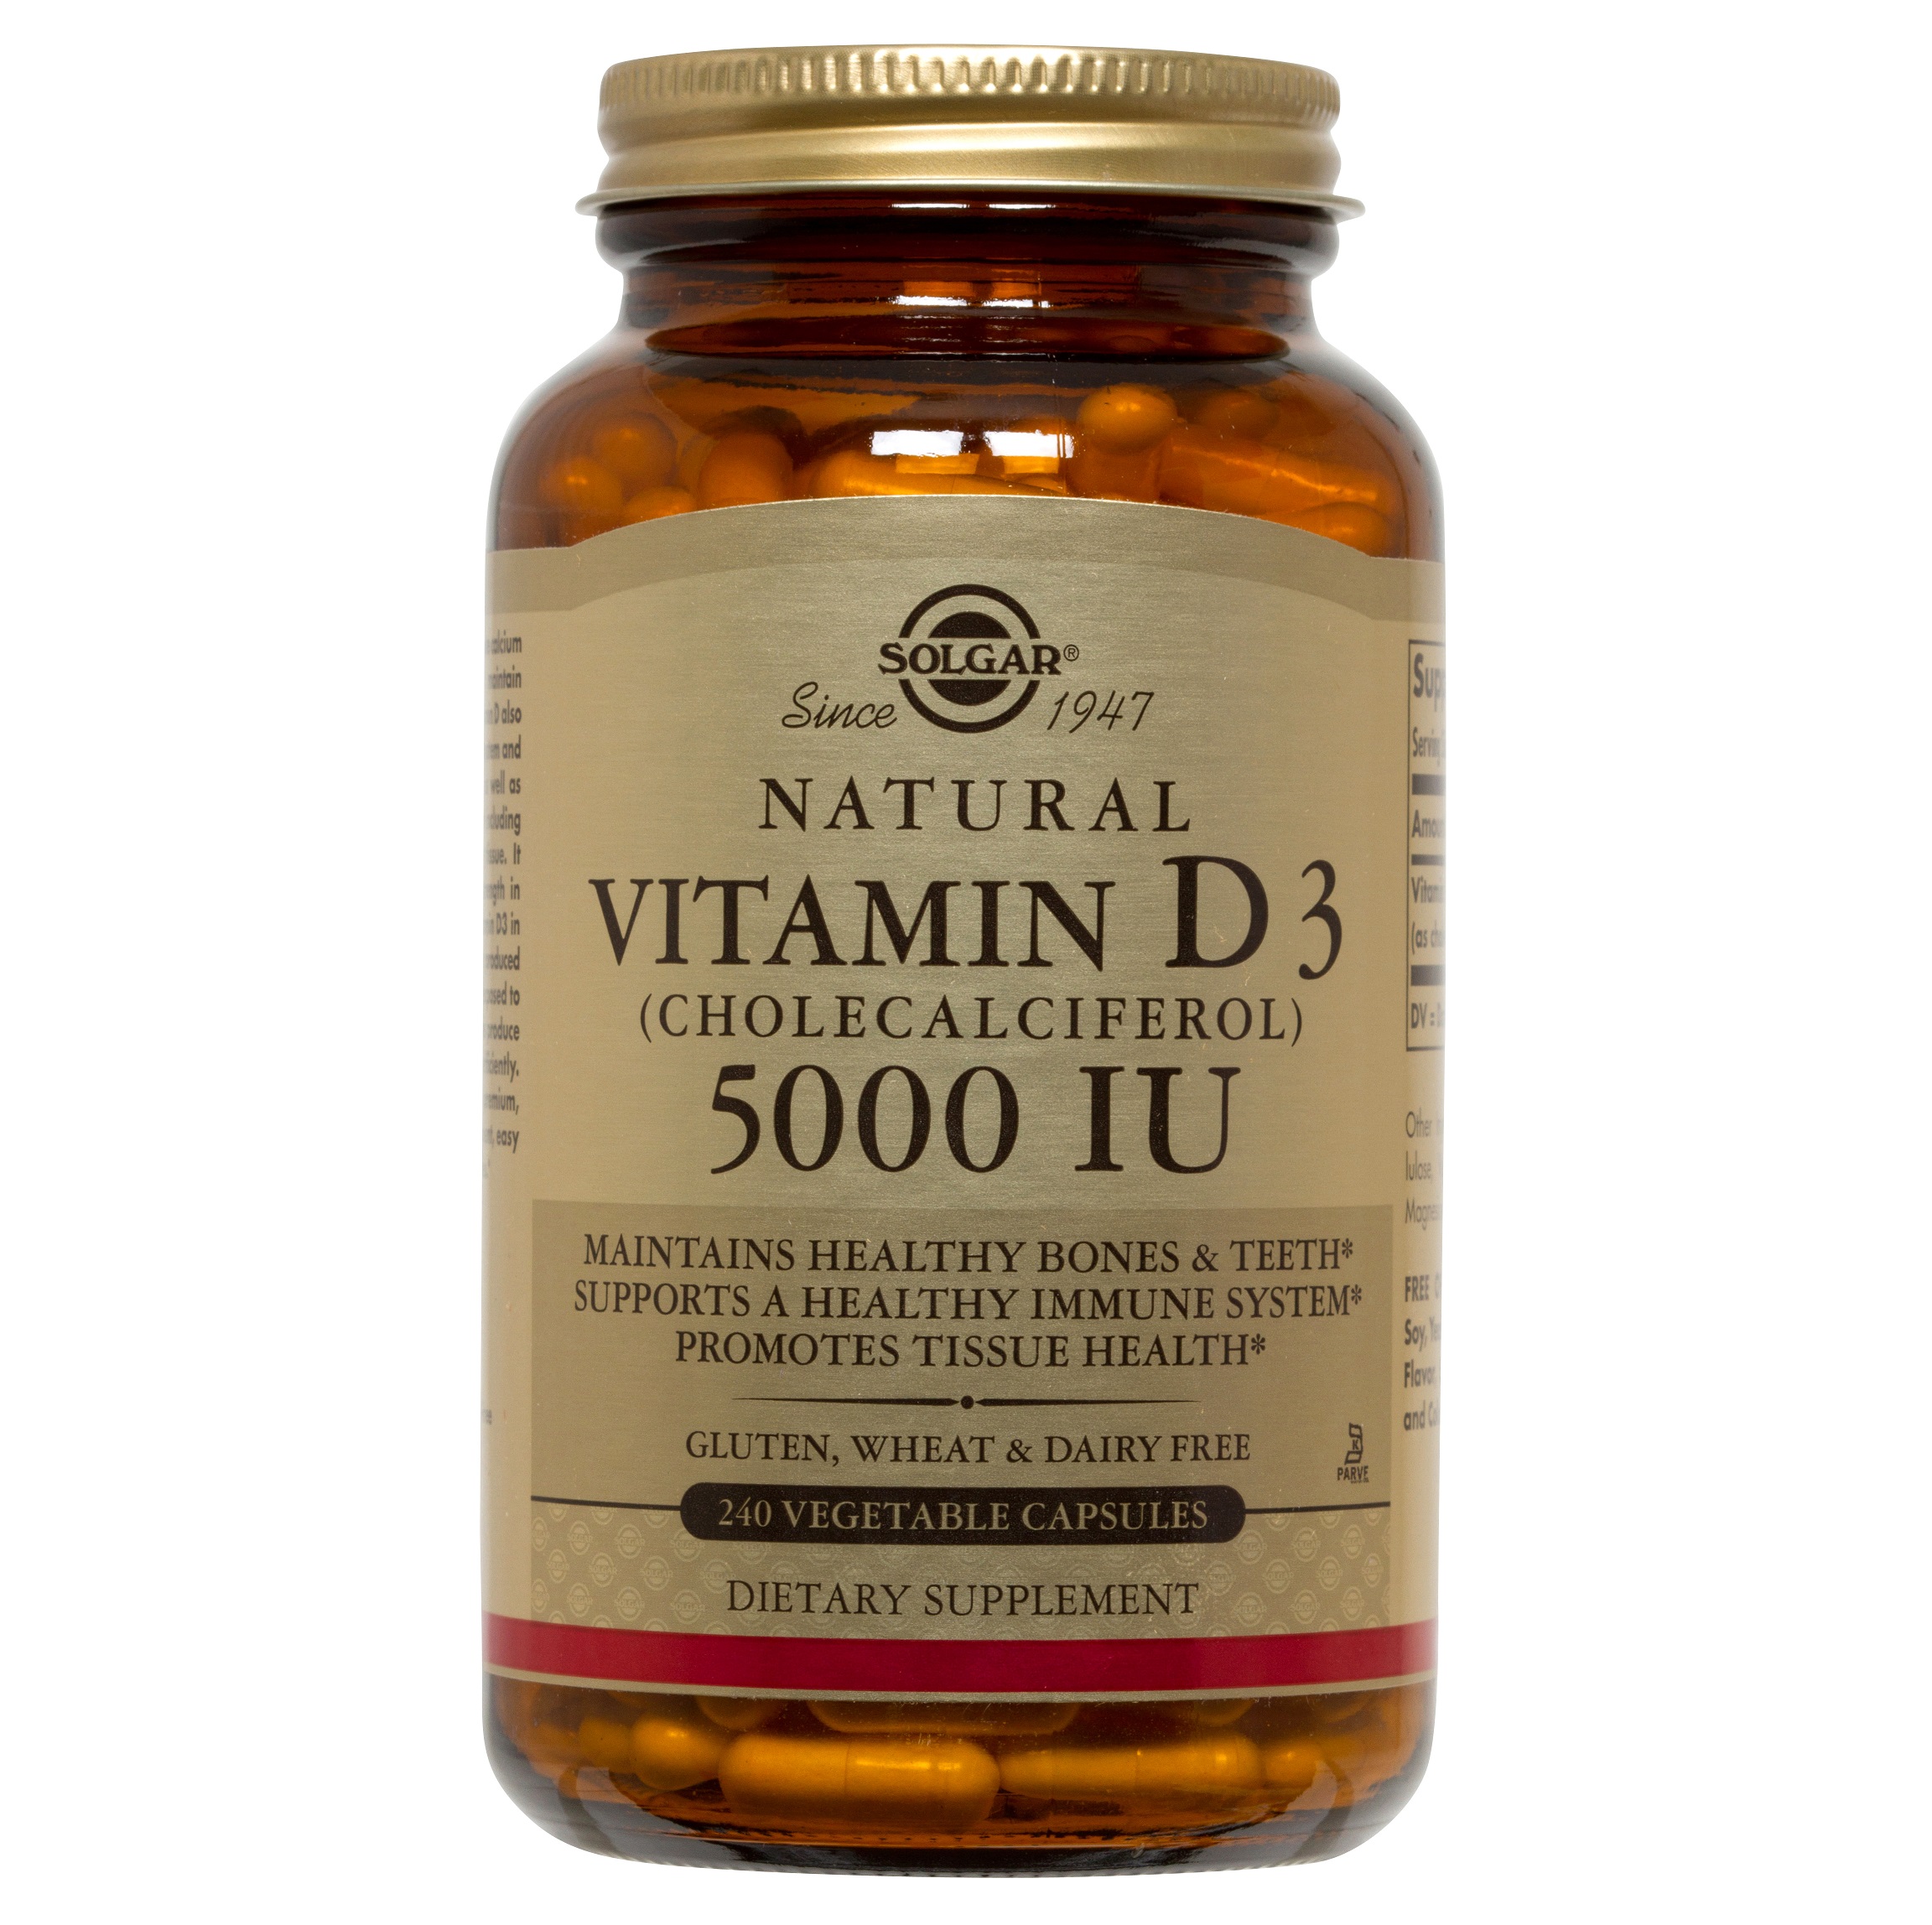 솔가, 내추럴 비타민 D3 (콜레칼시페롤) 5000 IU, 240 Vegetable Capsules